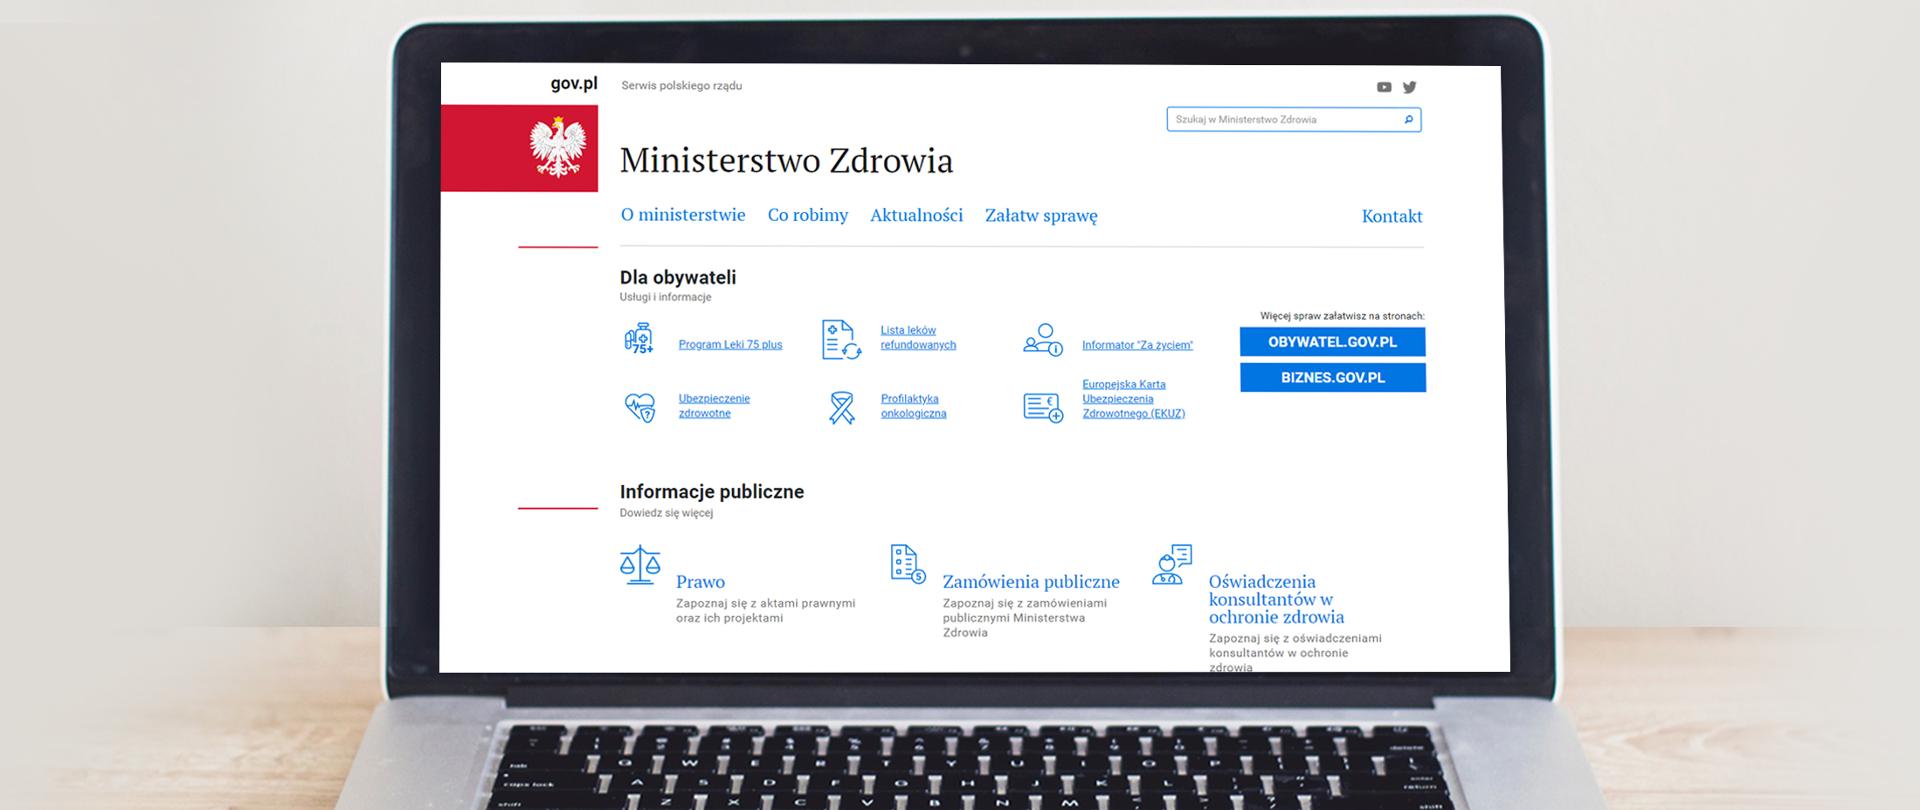 Grafika przedstawiająca otwartego laptopa, na którego ekranie wyświetla się strona główna Ministerstwa Zdrowia na portalu GOV.PL.